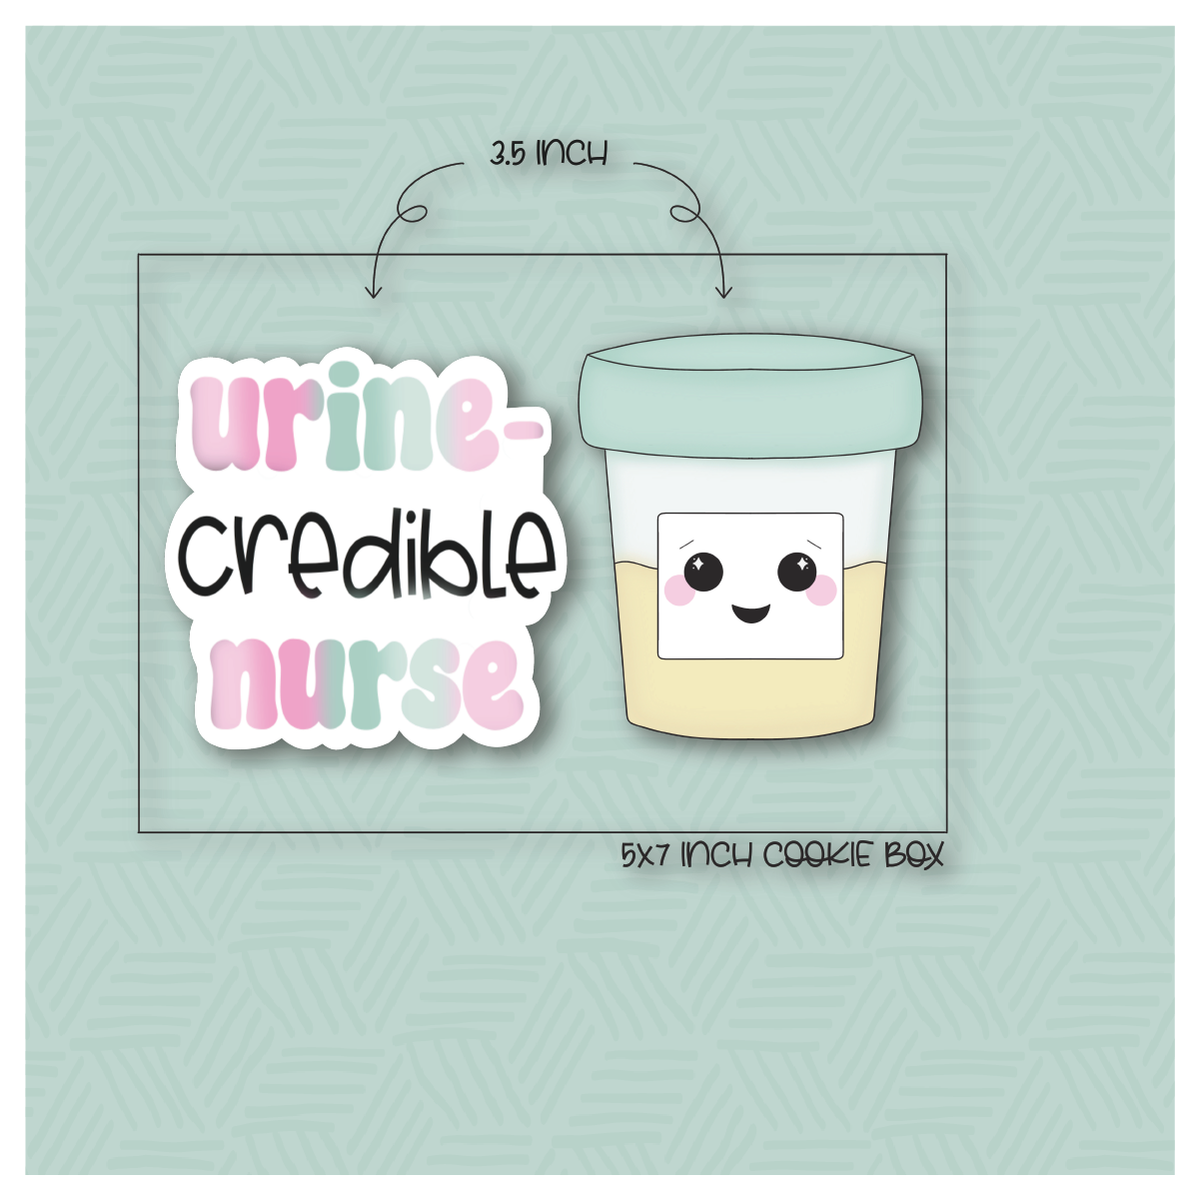 Urine-credible Nurse 2 Piece Cookie Cutter Set